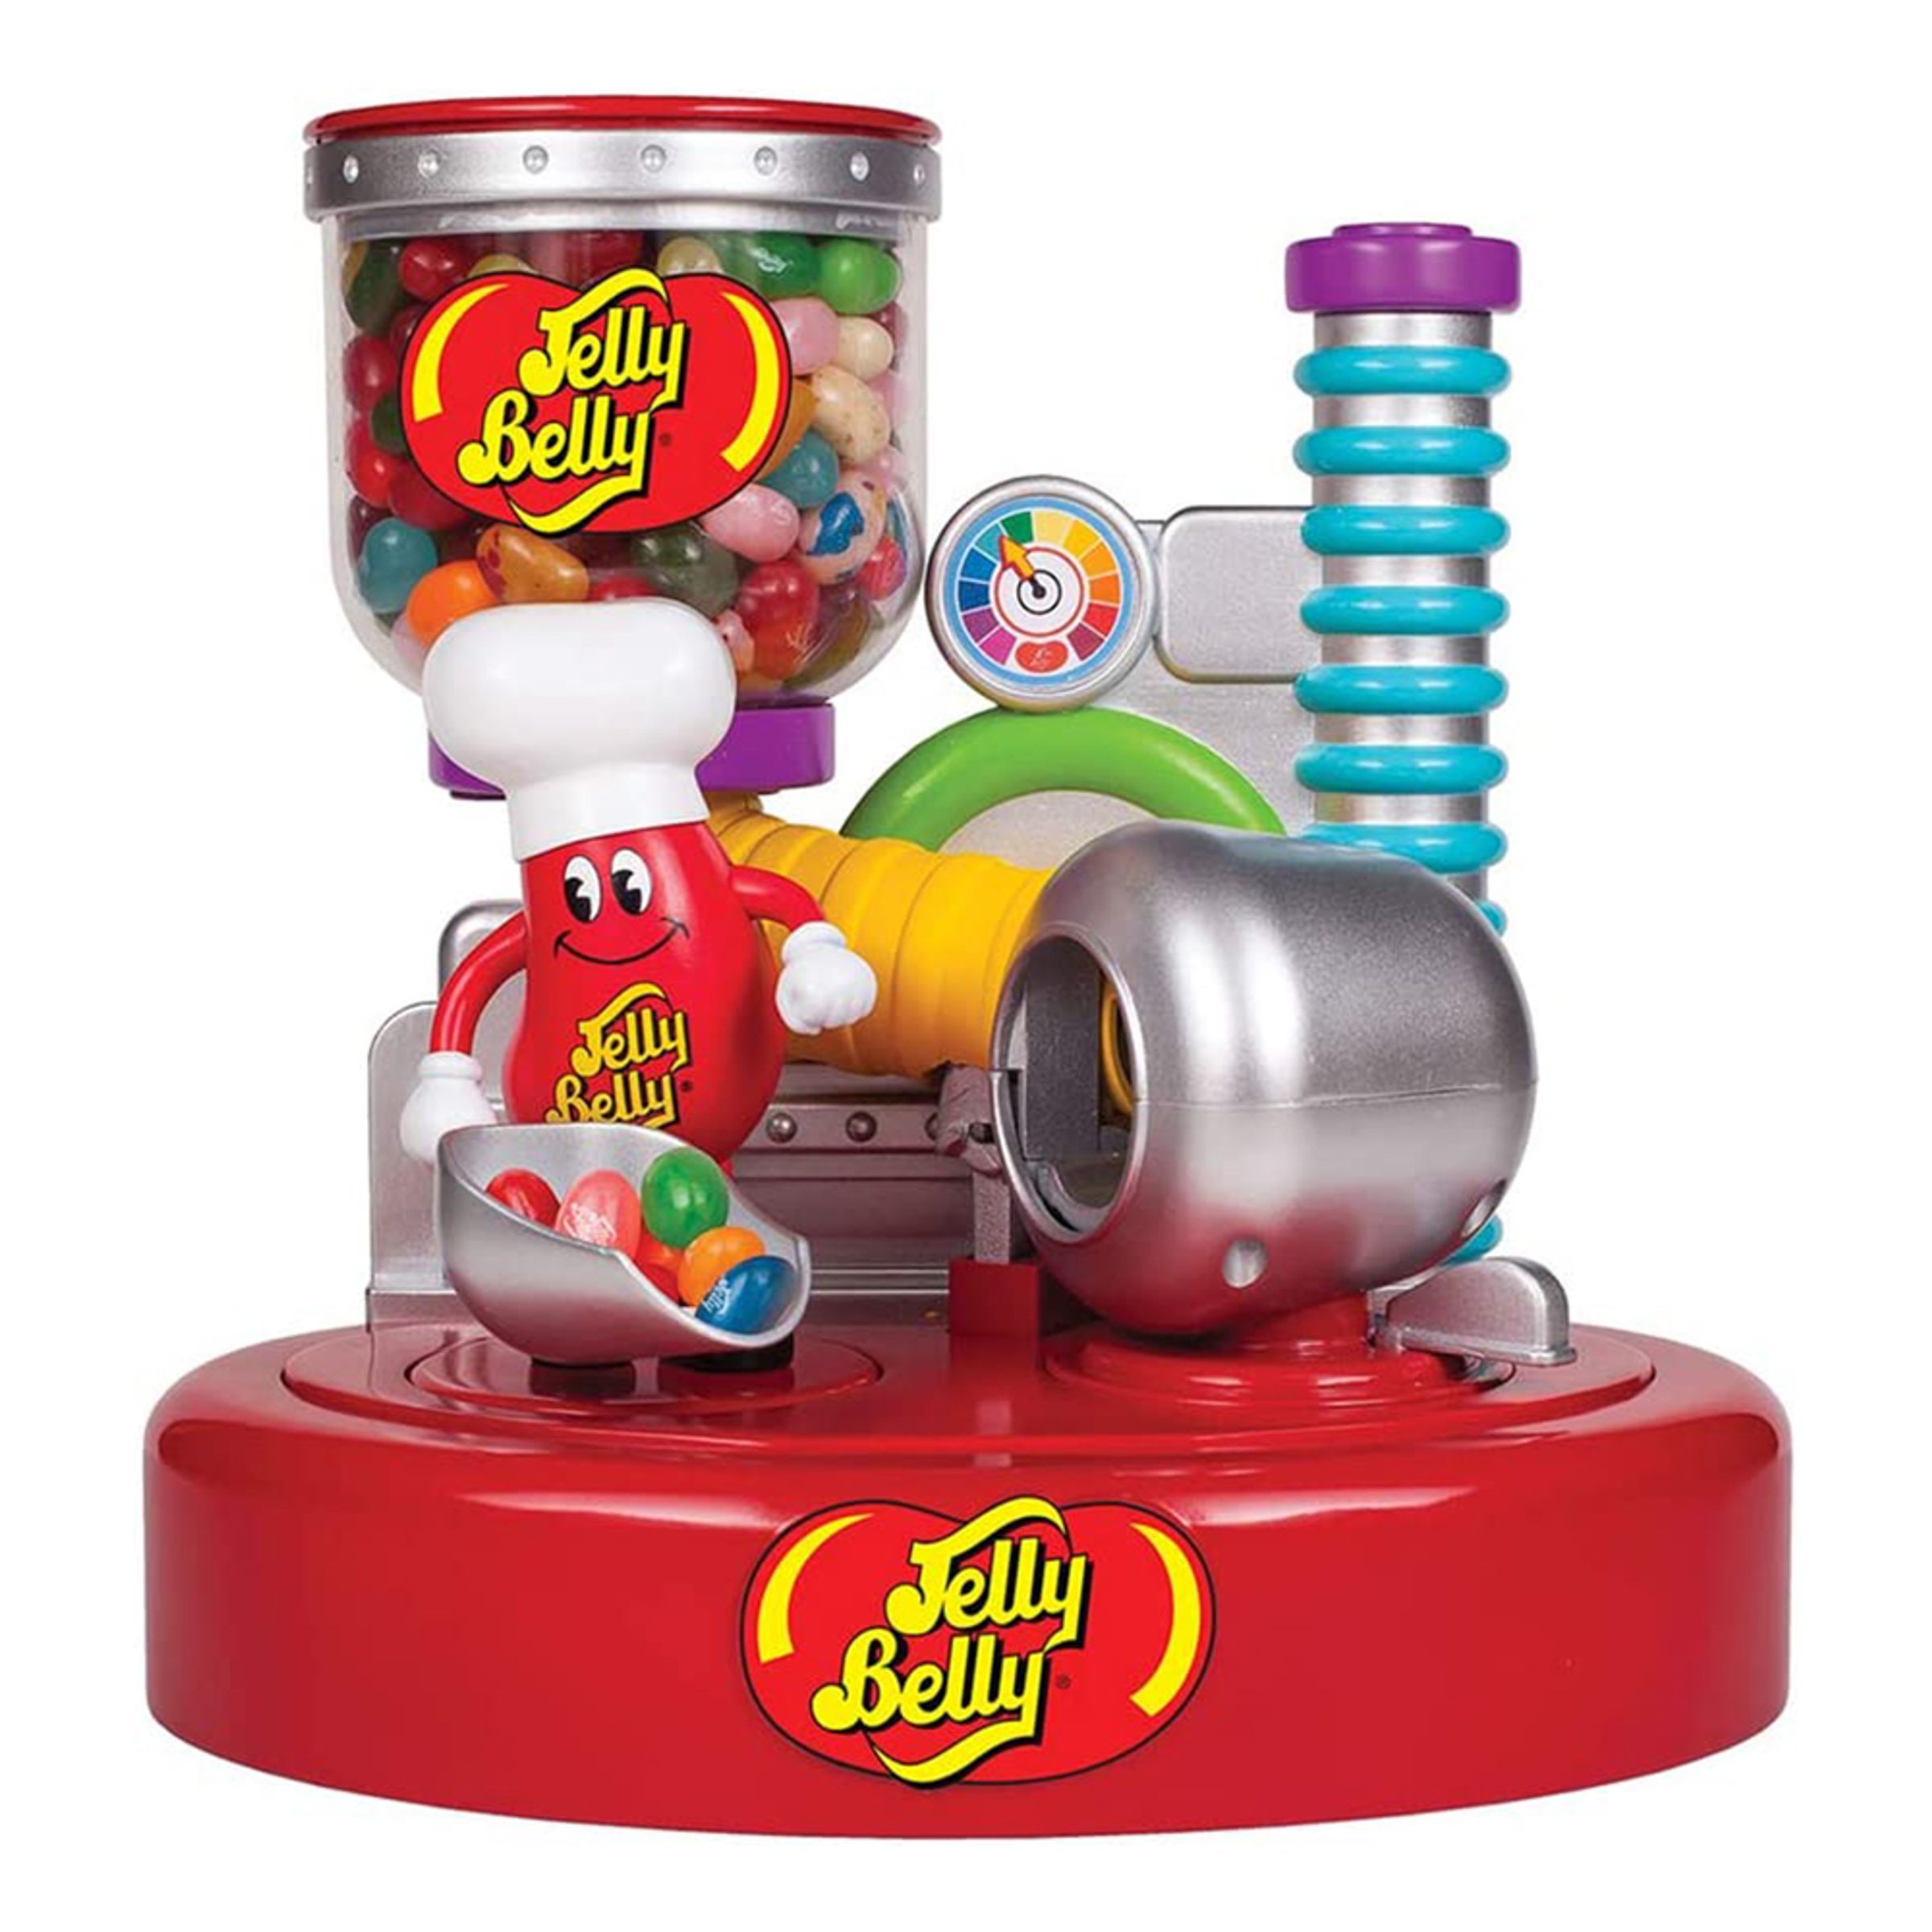 Jelly Belly Godisautomat